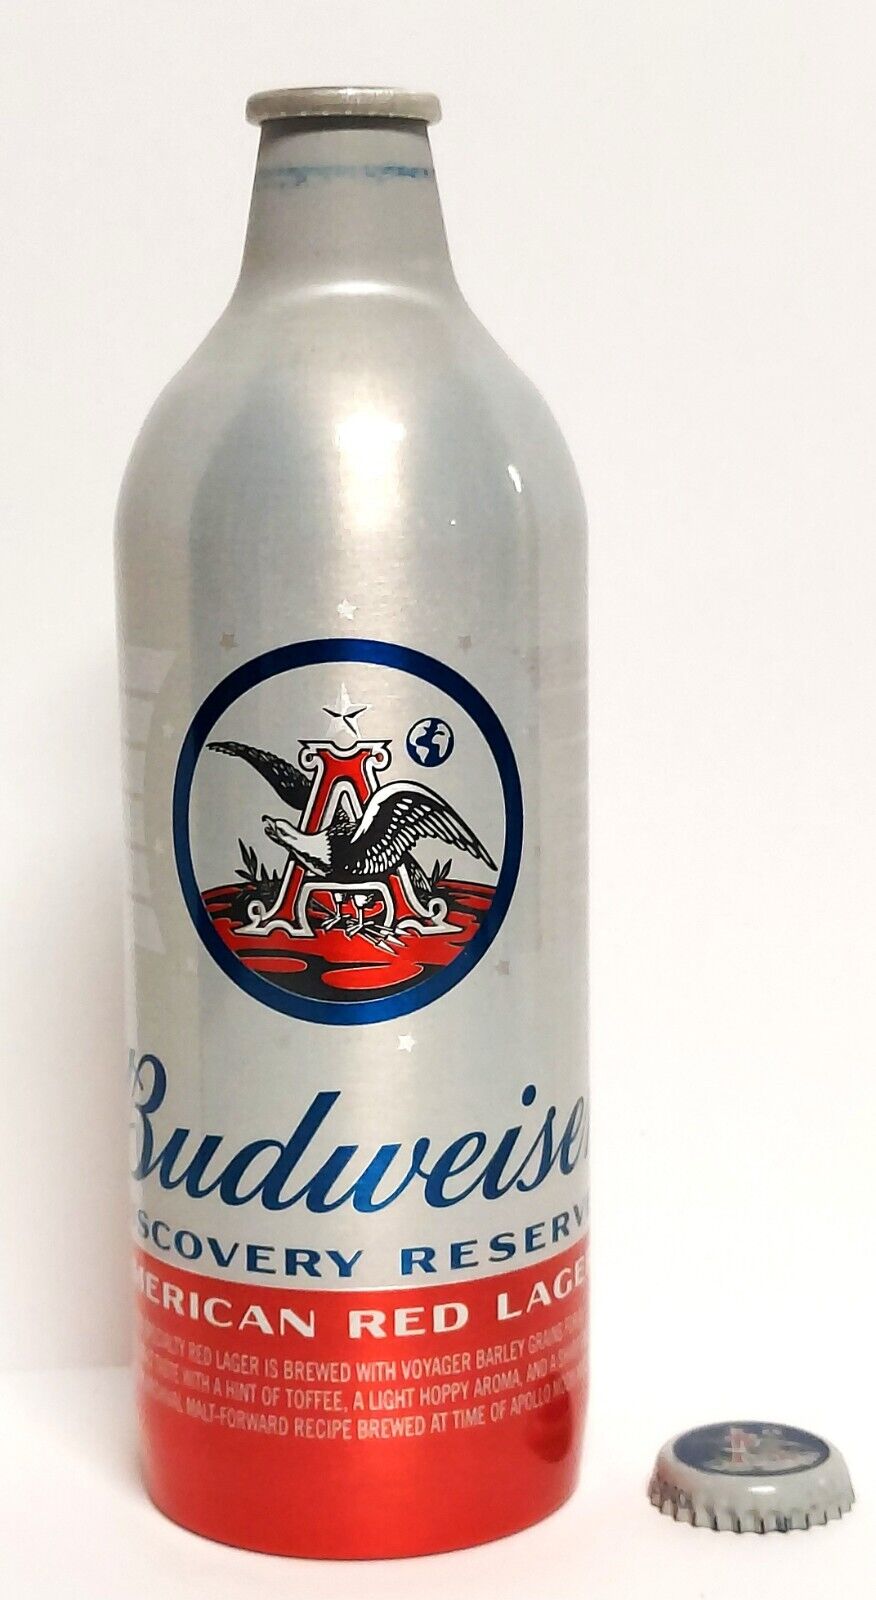 Budweiser Red Lager - Aluminum Beer Bottle - Celebrating the Moon Landing 50th